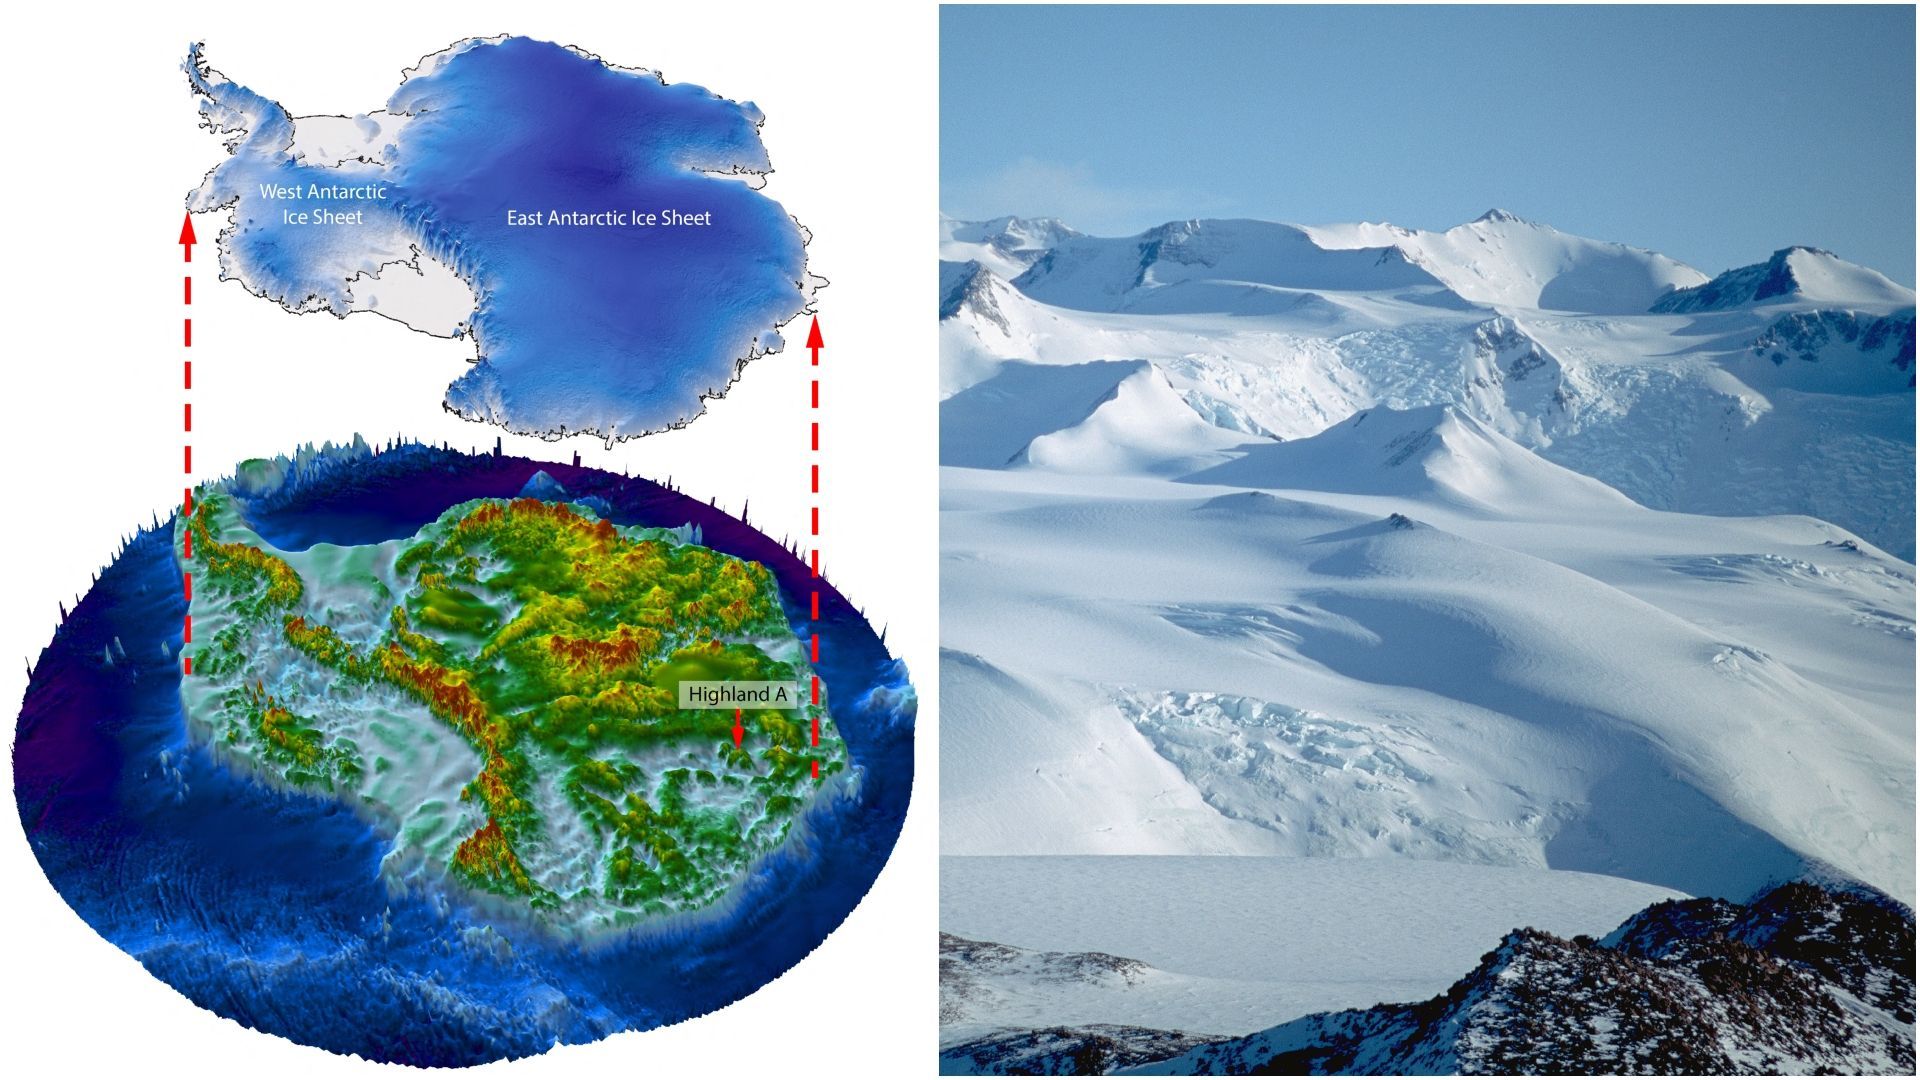  Un paysage de collines et vallées verdoyantes sous les glaces de l’Antarctique Fc36575dc4bd42e058094273daee5230-1698164695